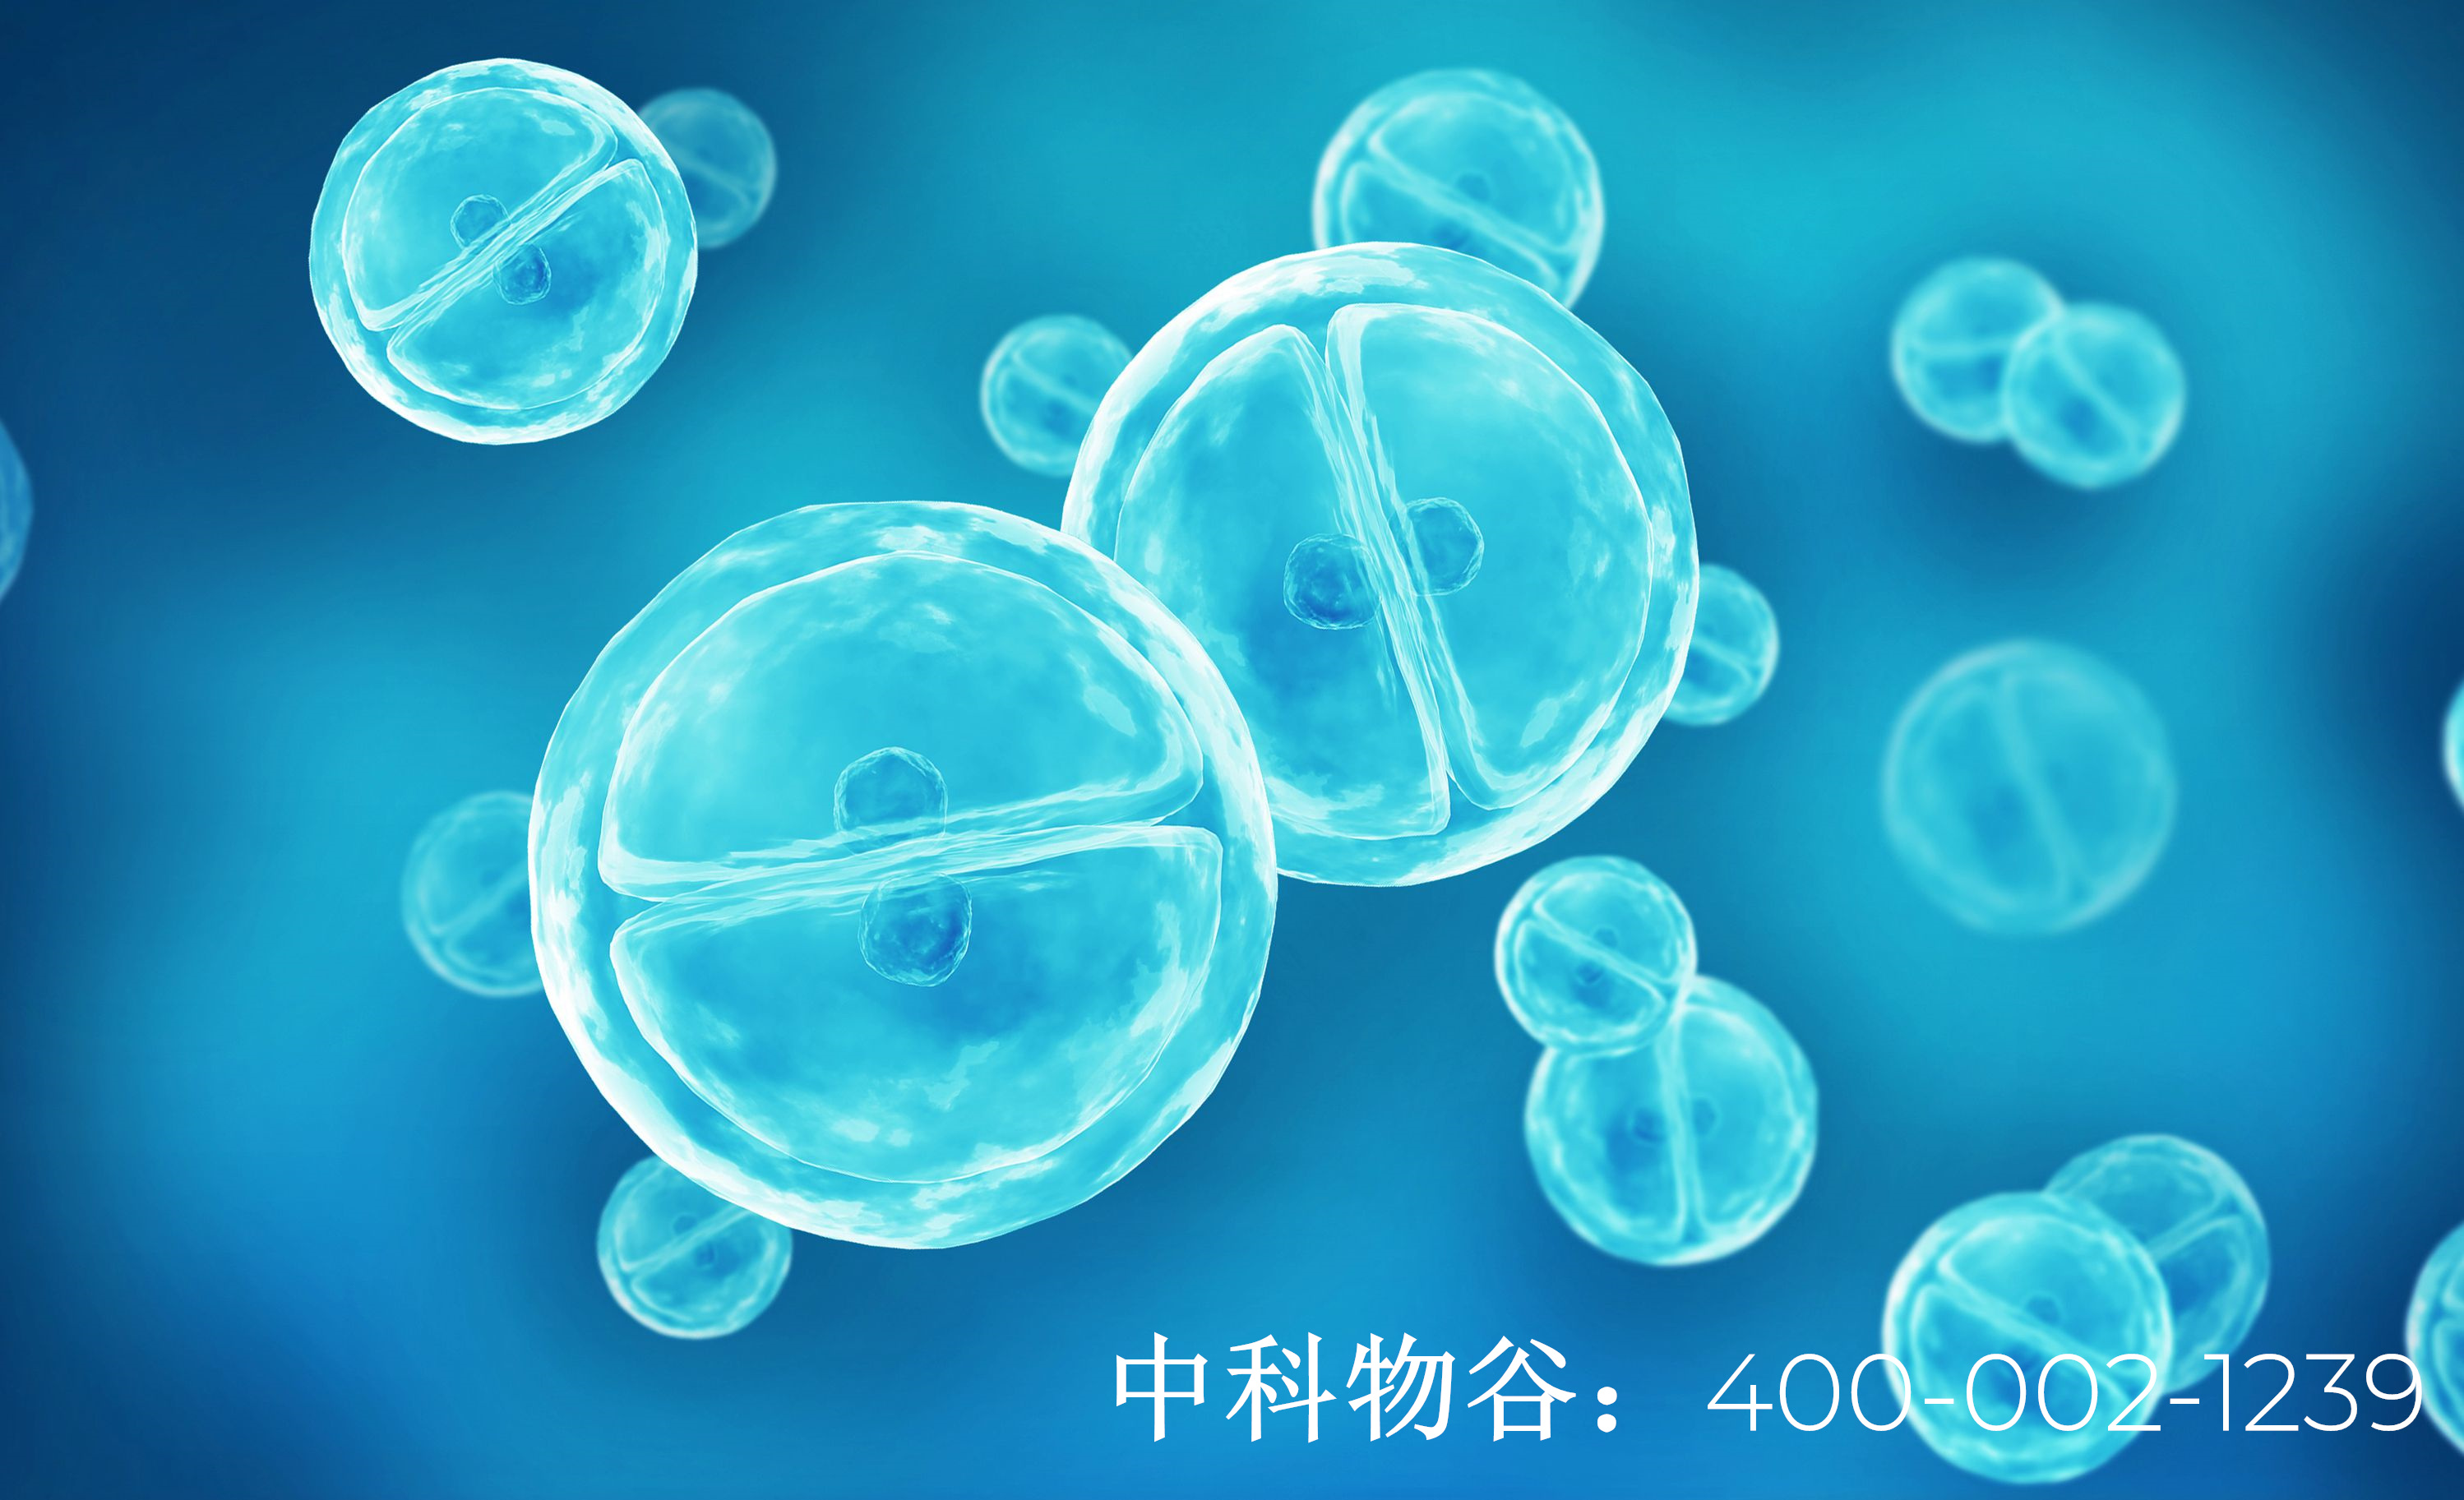 北京干细胞-中科物谷